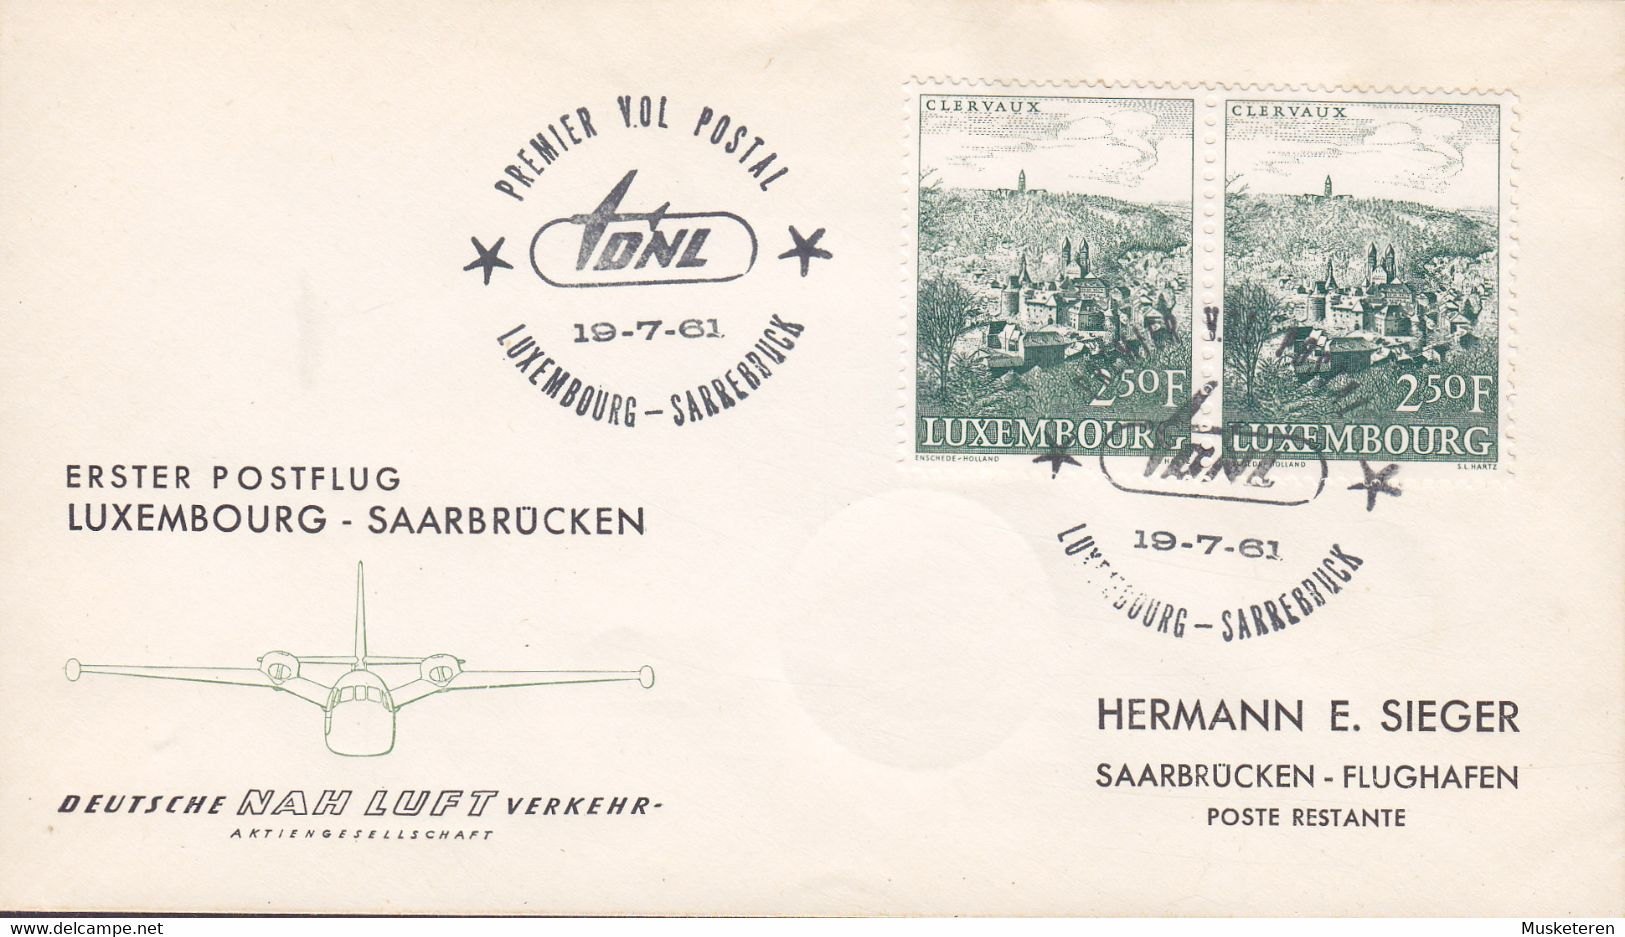 Luxembourg Deutsche NAH LUFT Verkehr First Flight Premiére Vol Postal LUXEMBOURG - SAARBRÜCKEN 1961 Cover Lettre - Cartas & Documentos